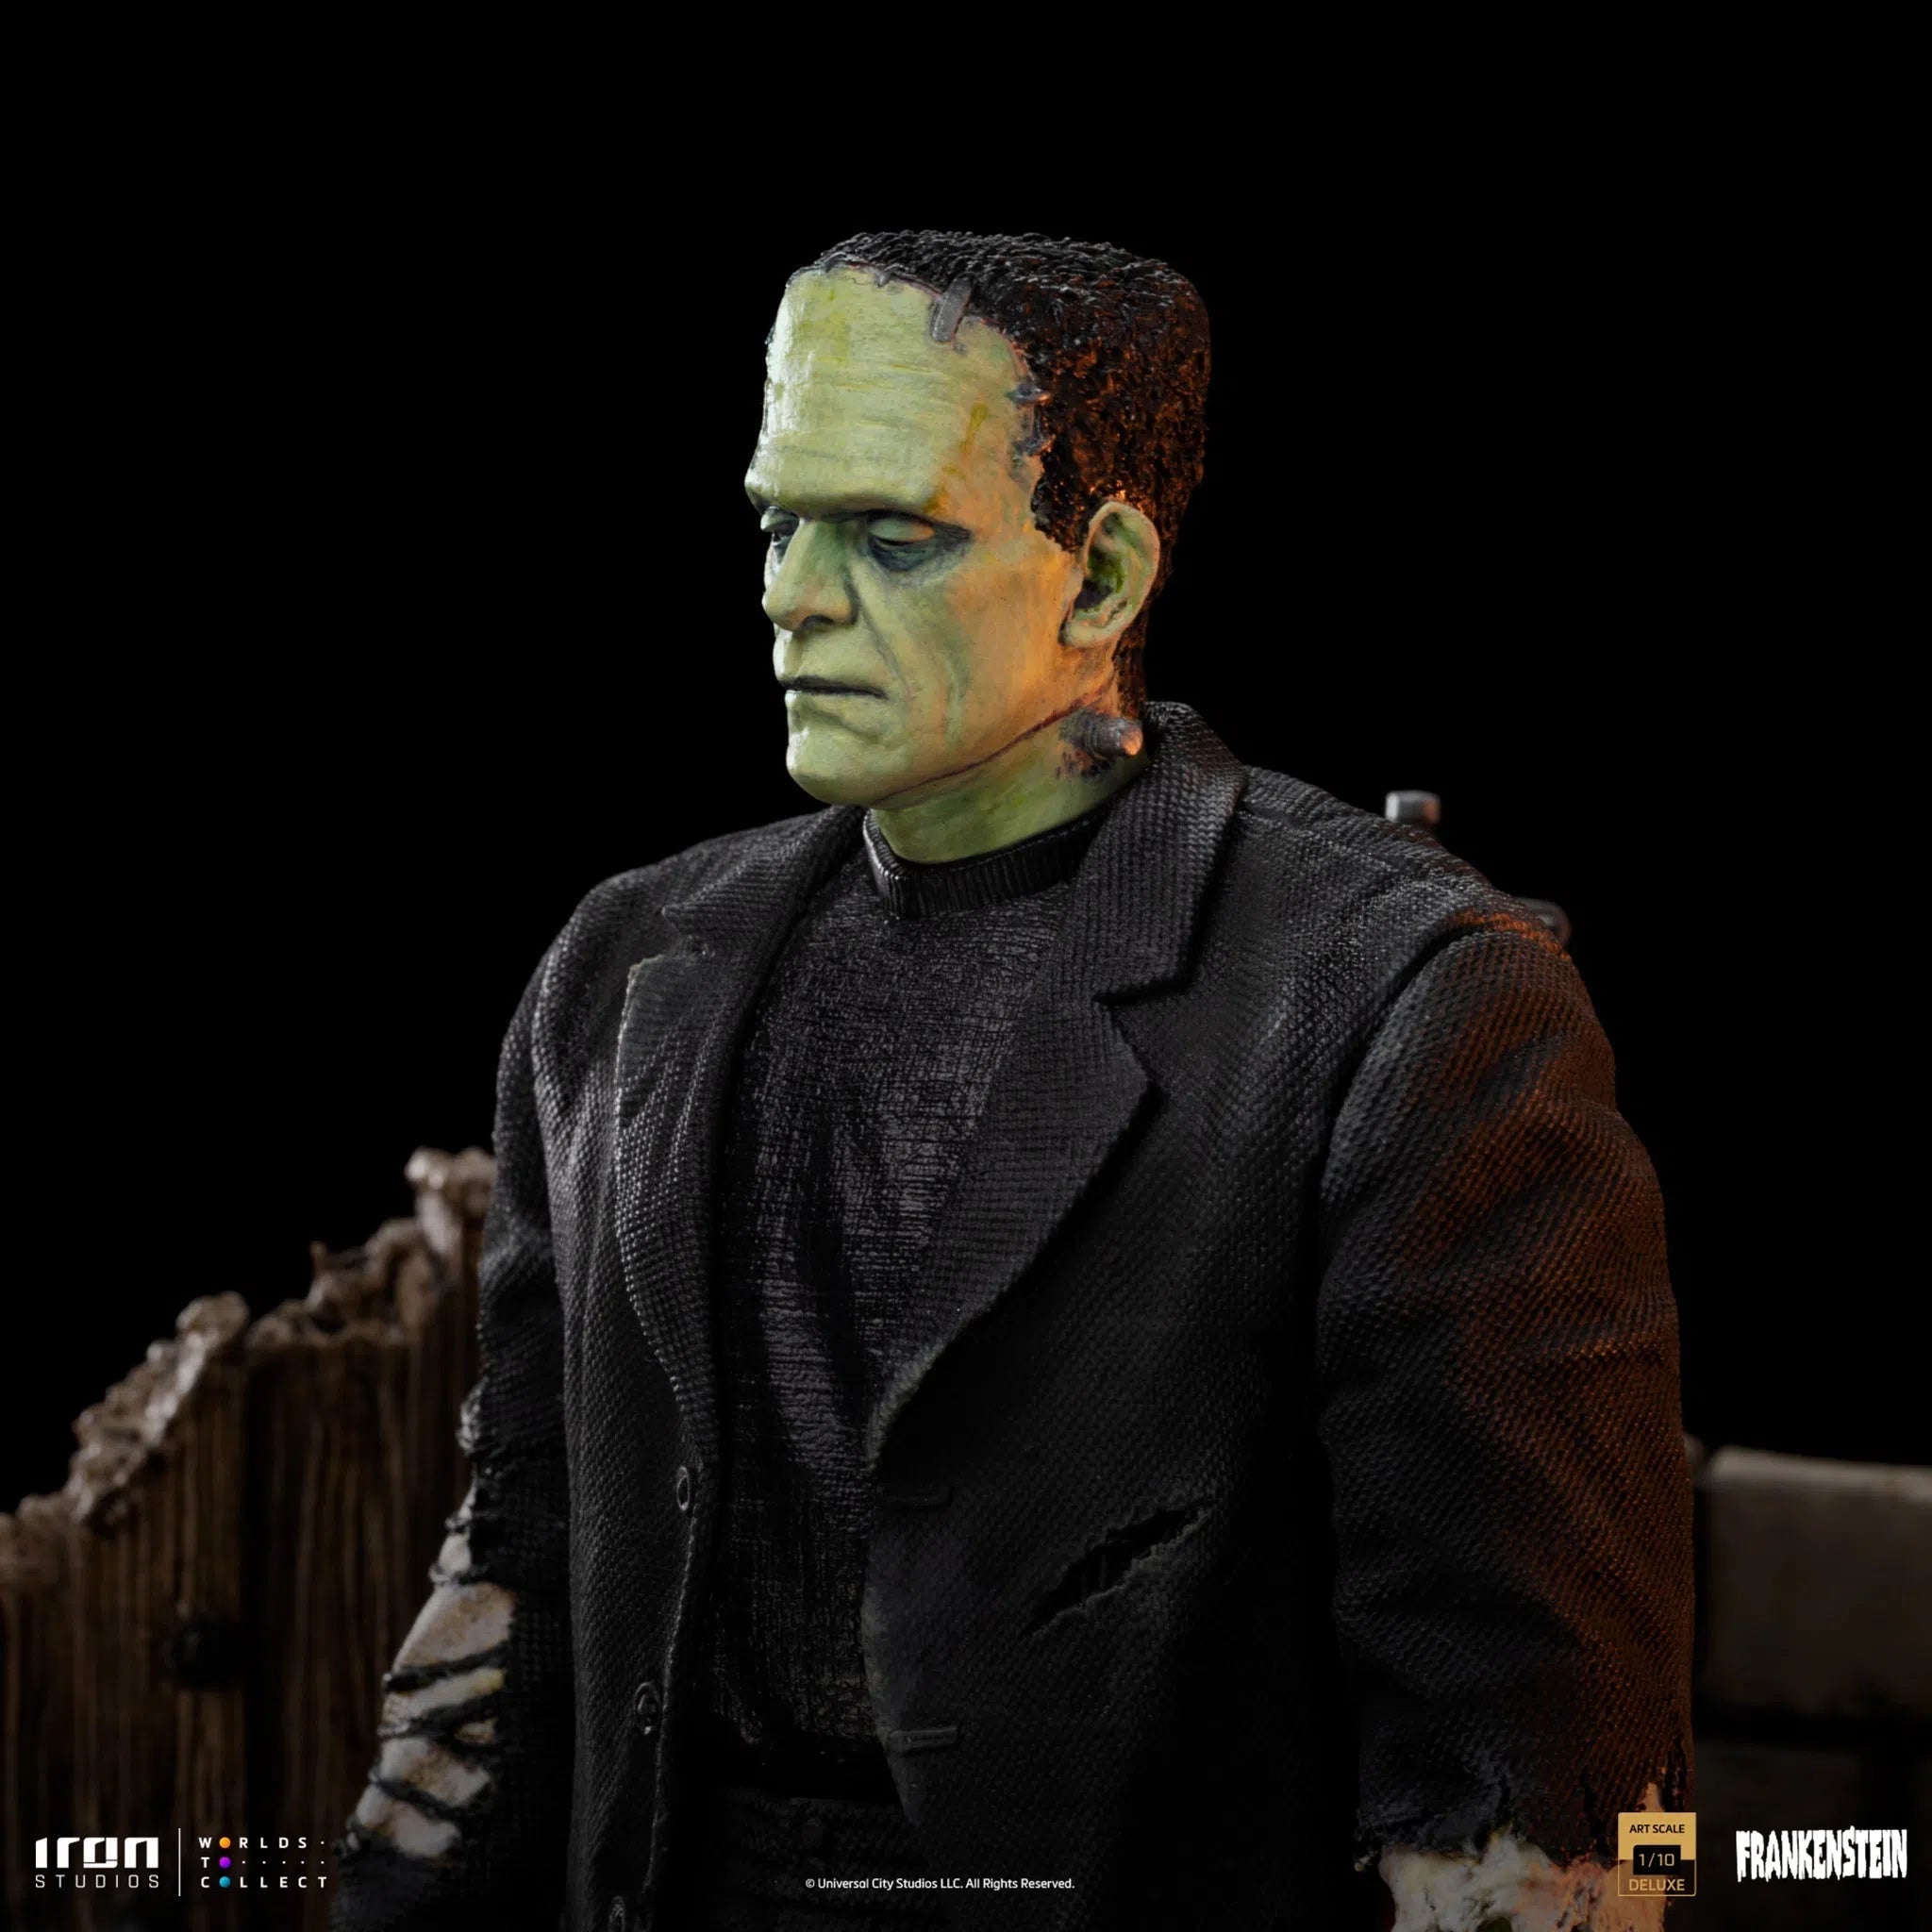 Frankenstein: Universal Monsters: Deluxe: Art Statue 1/10 Iron Studios